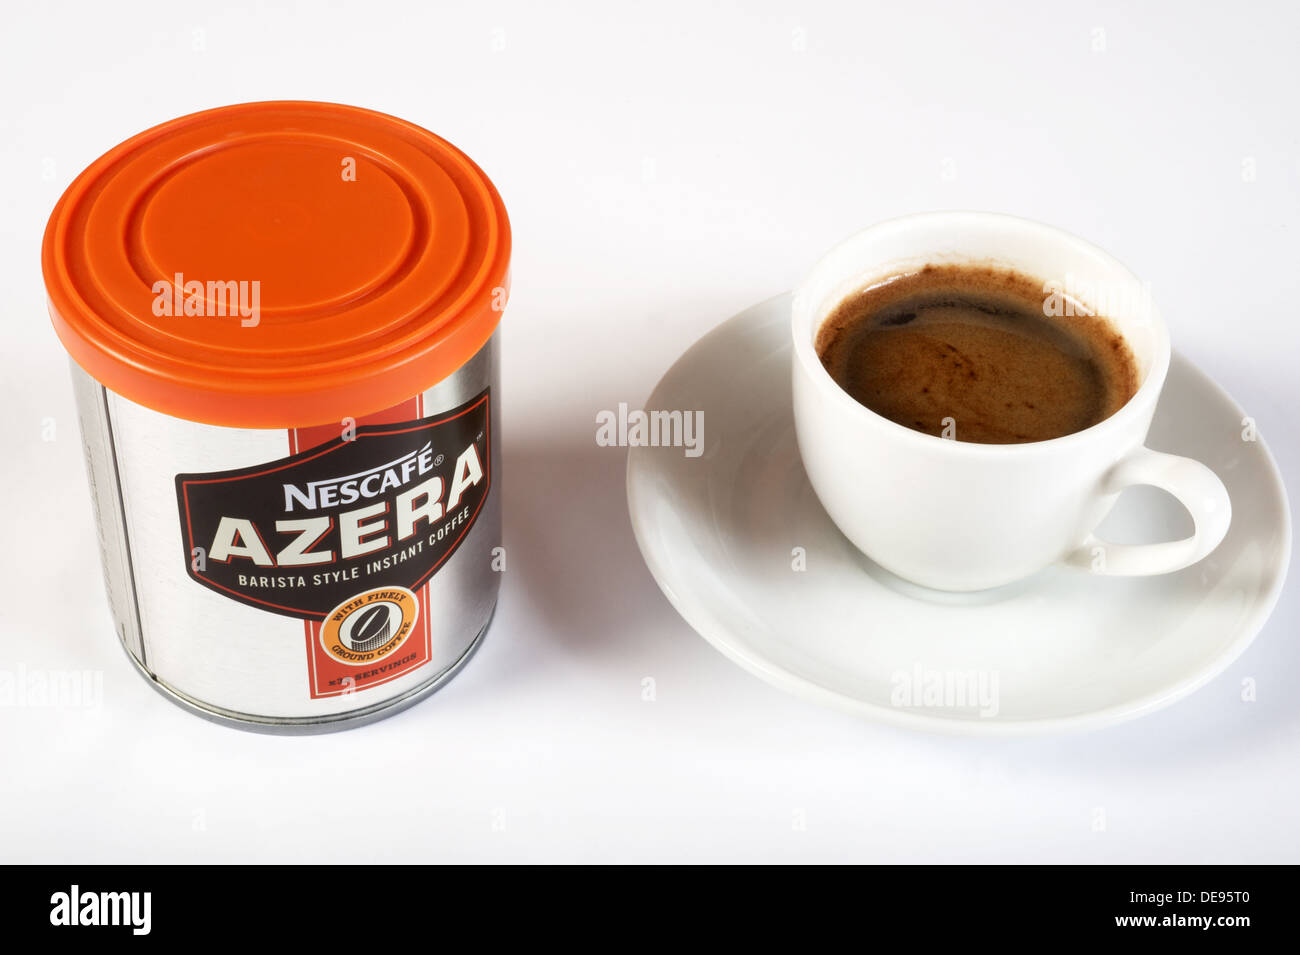 Nescafe Azera instant coffee Stock Photo